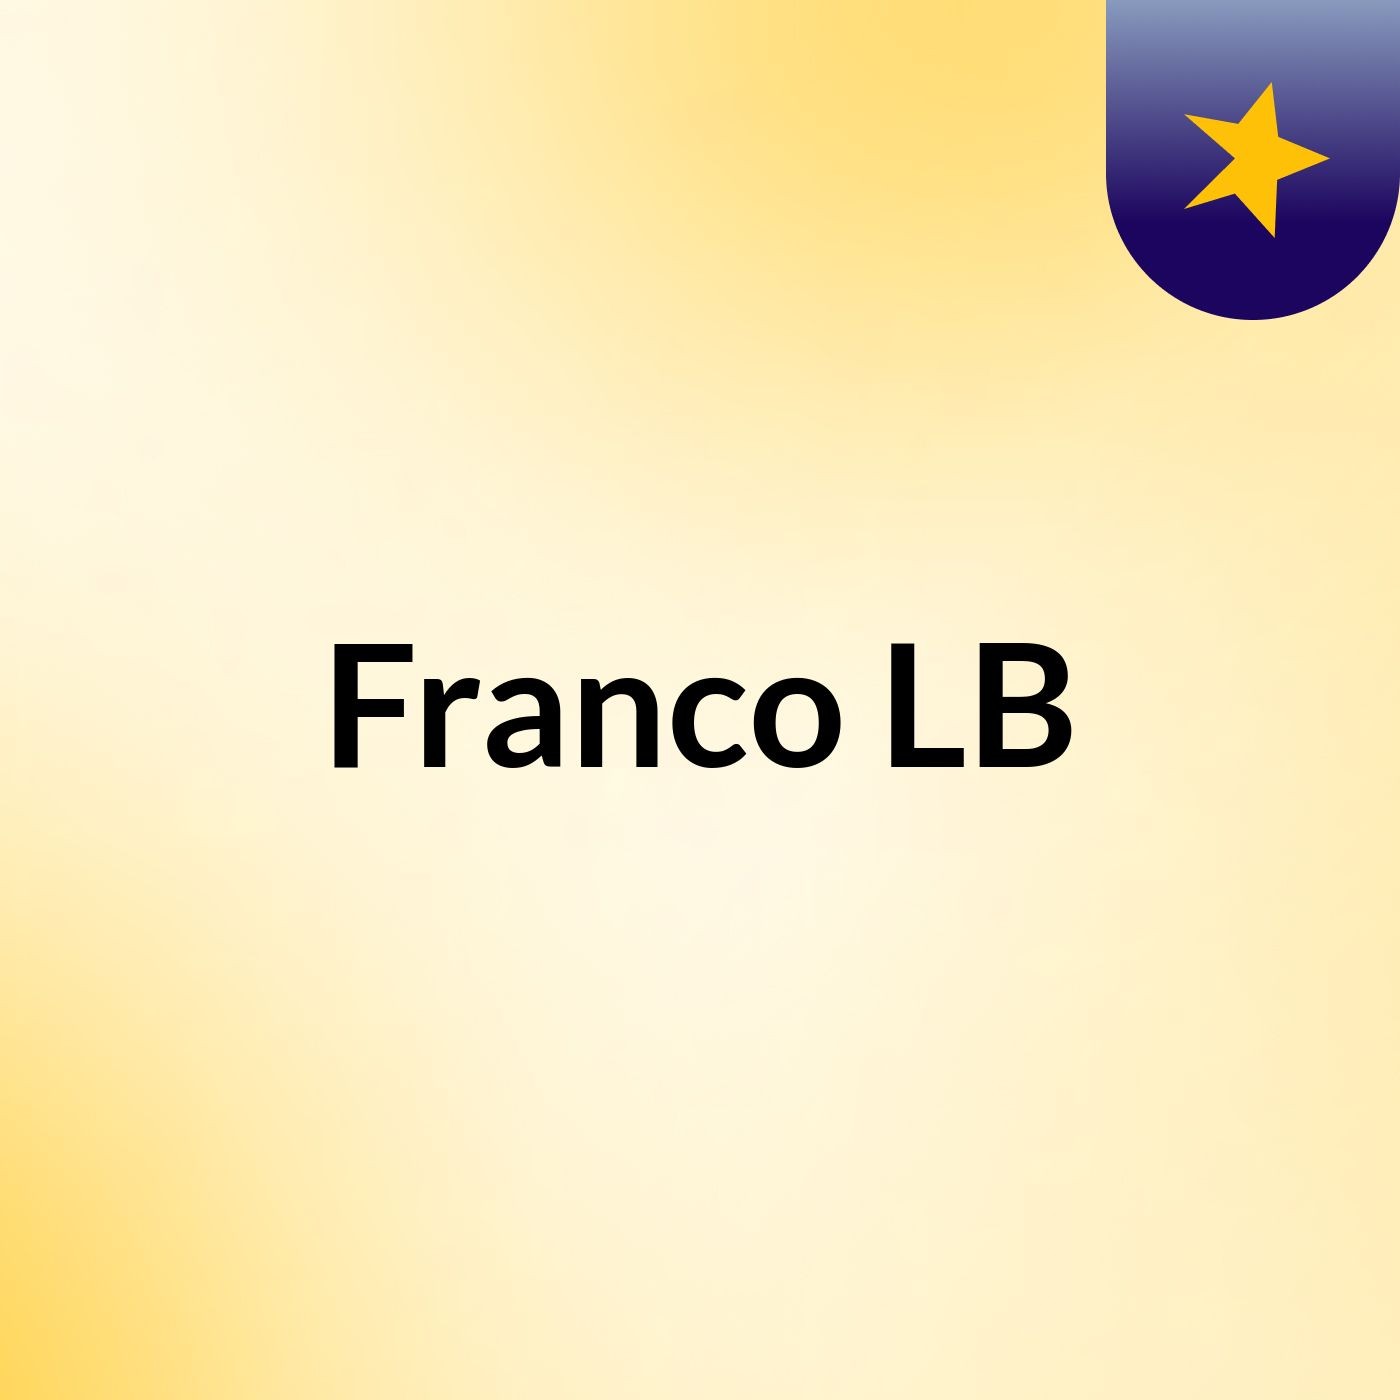 Franco LB